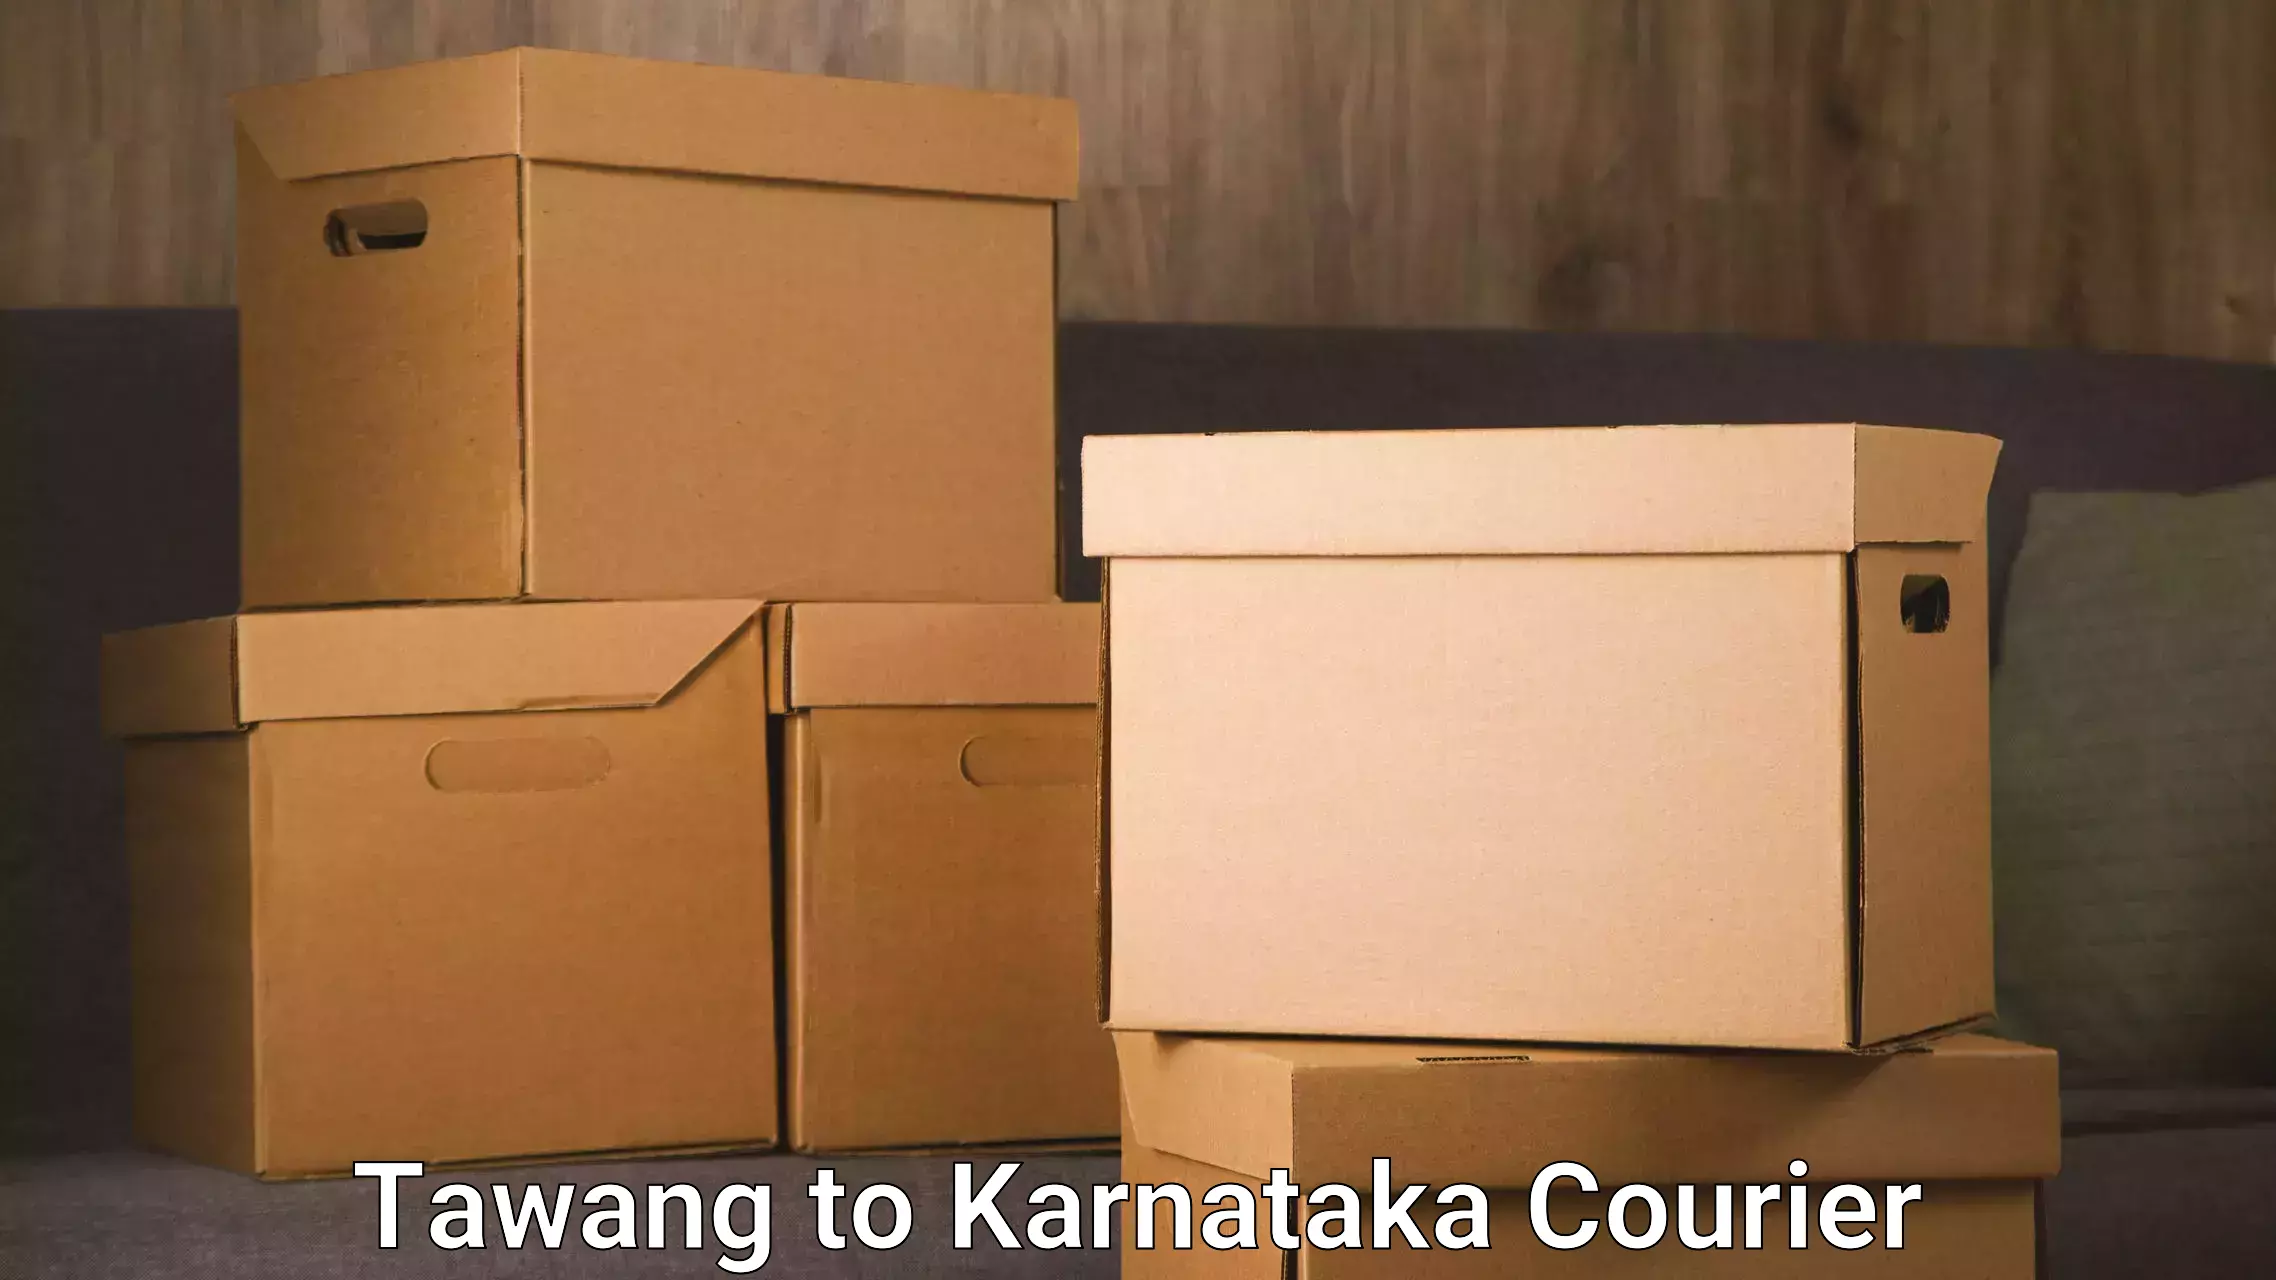 Fast shipping solutions Tawang to Karnataka